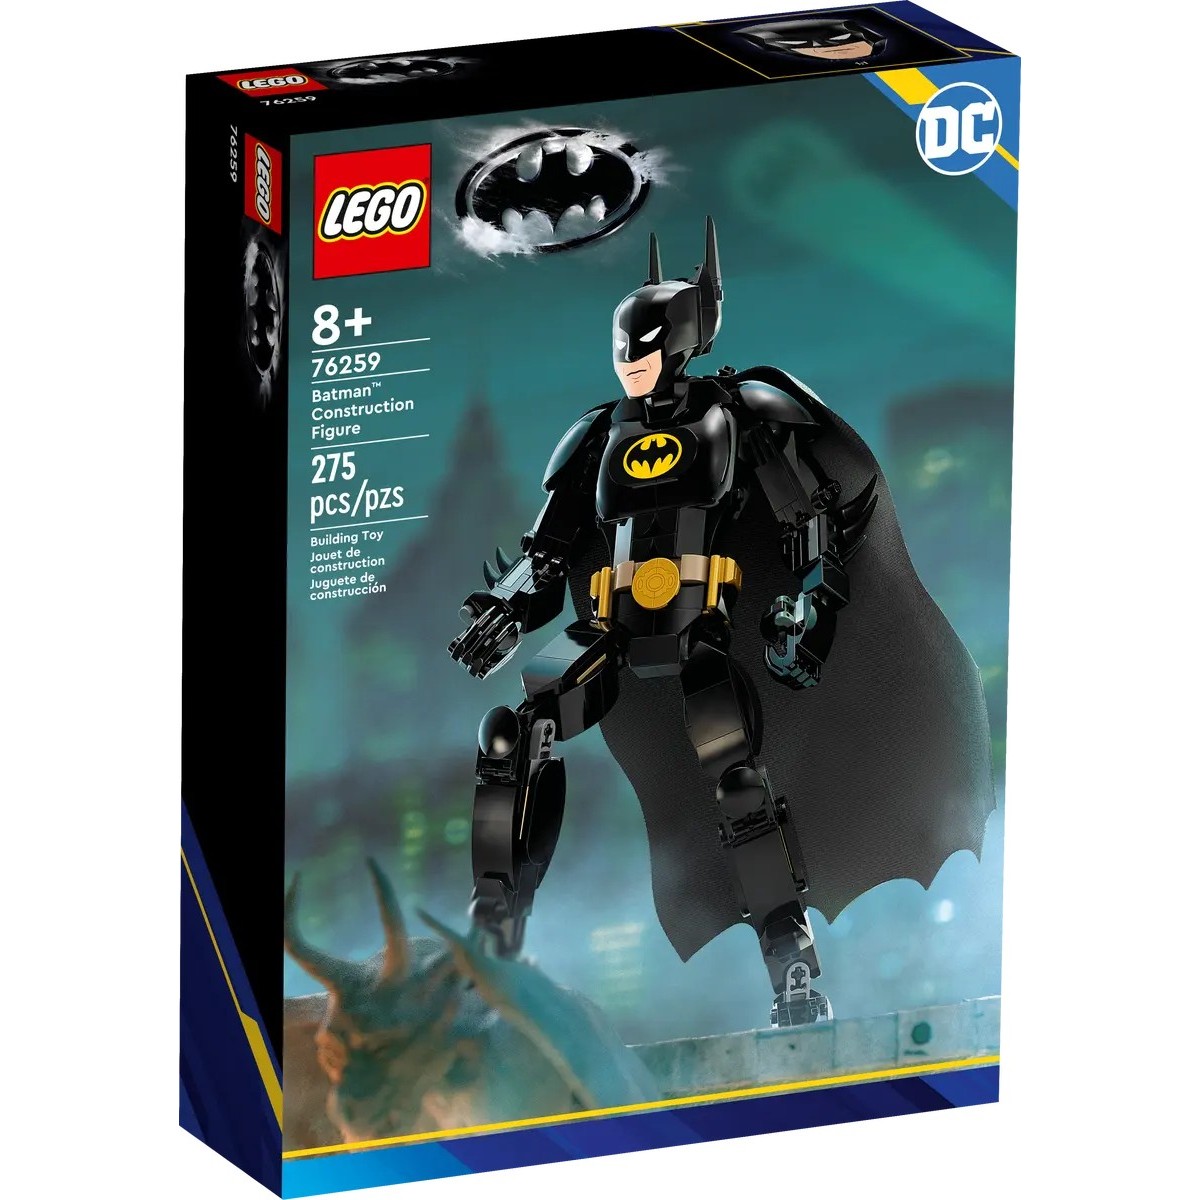 LEGO DC BATMAN ZOSTAVITELNA FIGURKA: BATMAN /76259/ posledný kus